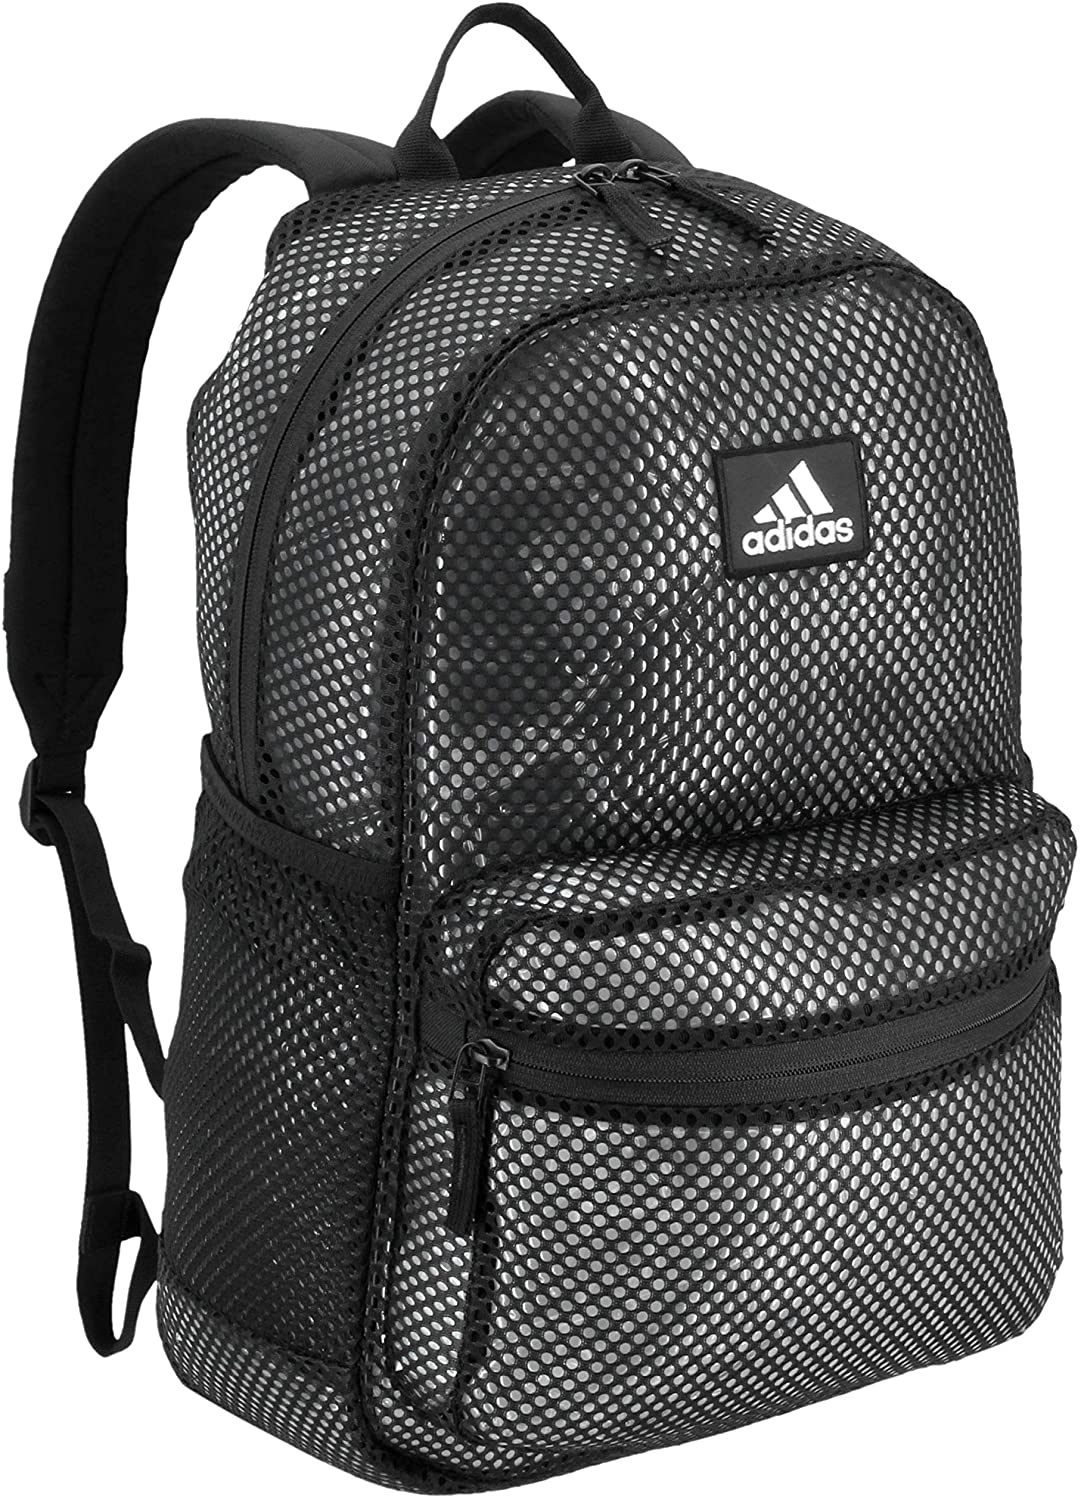 adidas backpack lifetime warranty